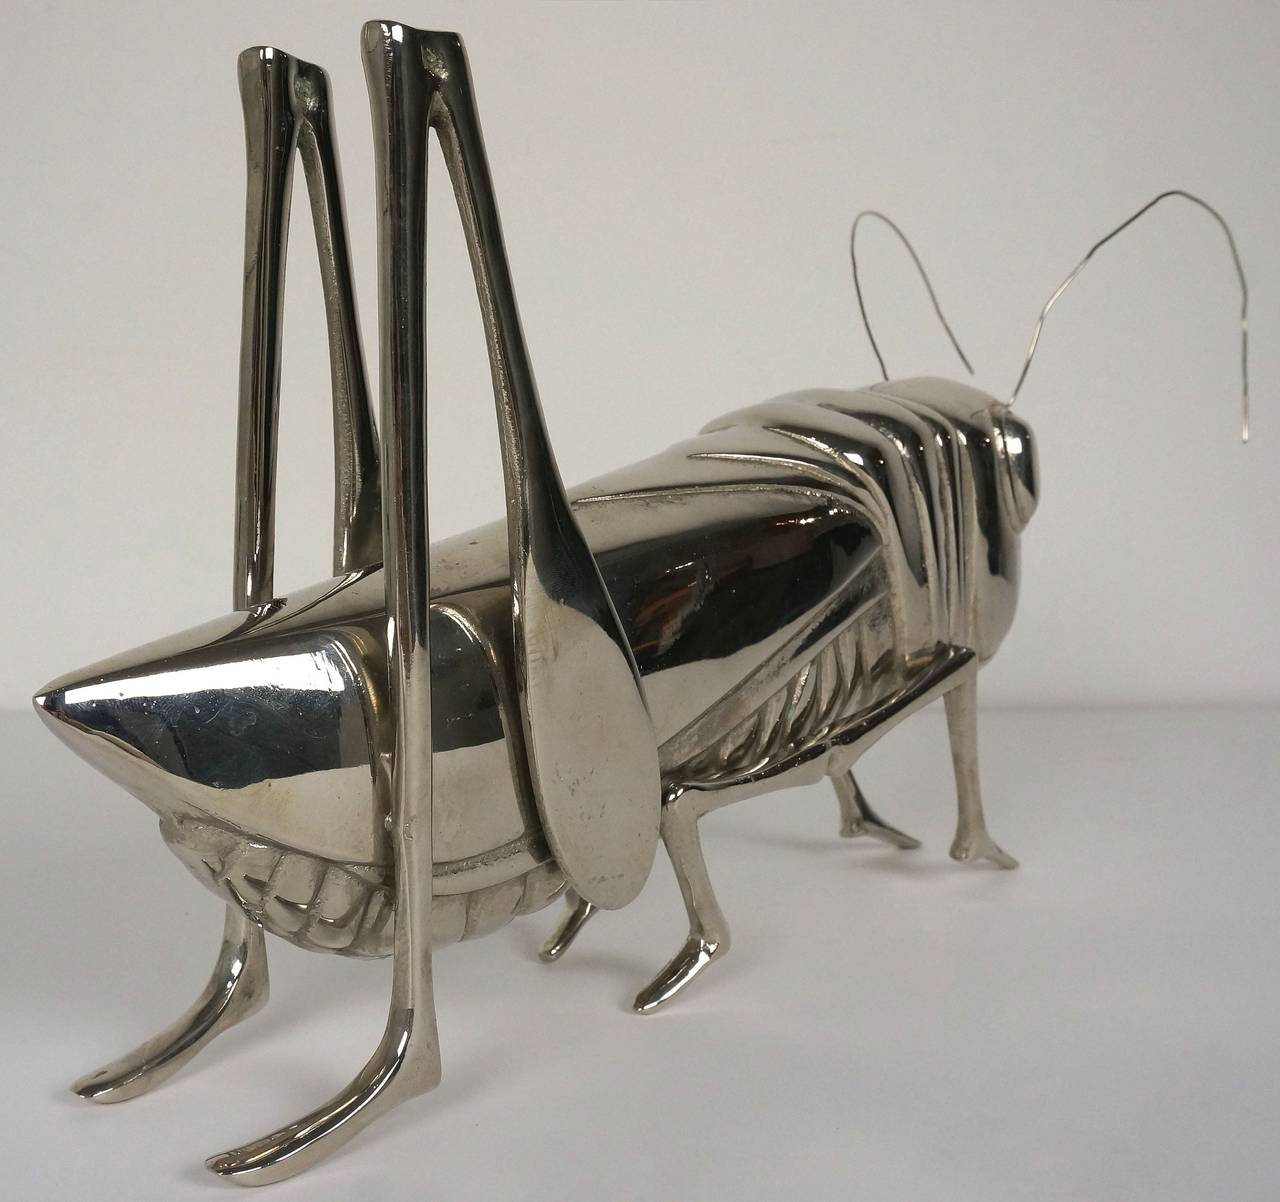 grasshopper sculpture